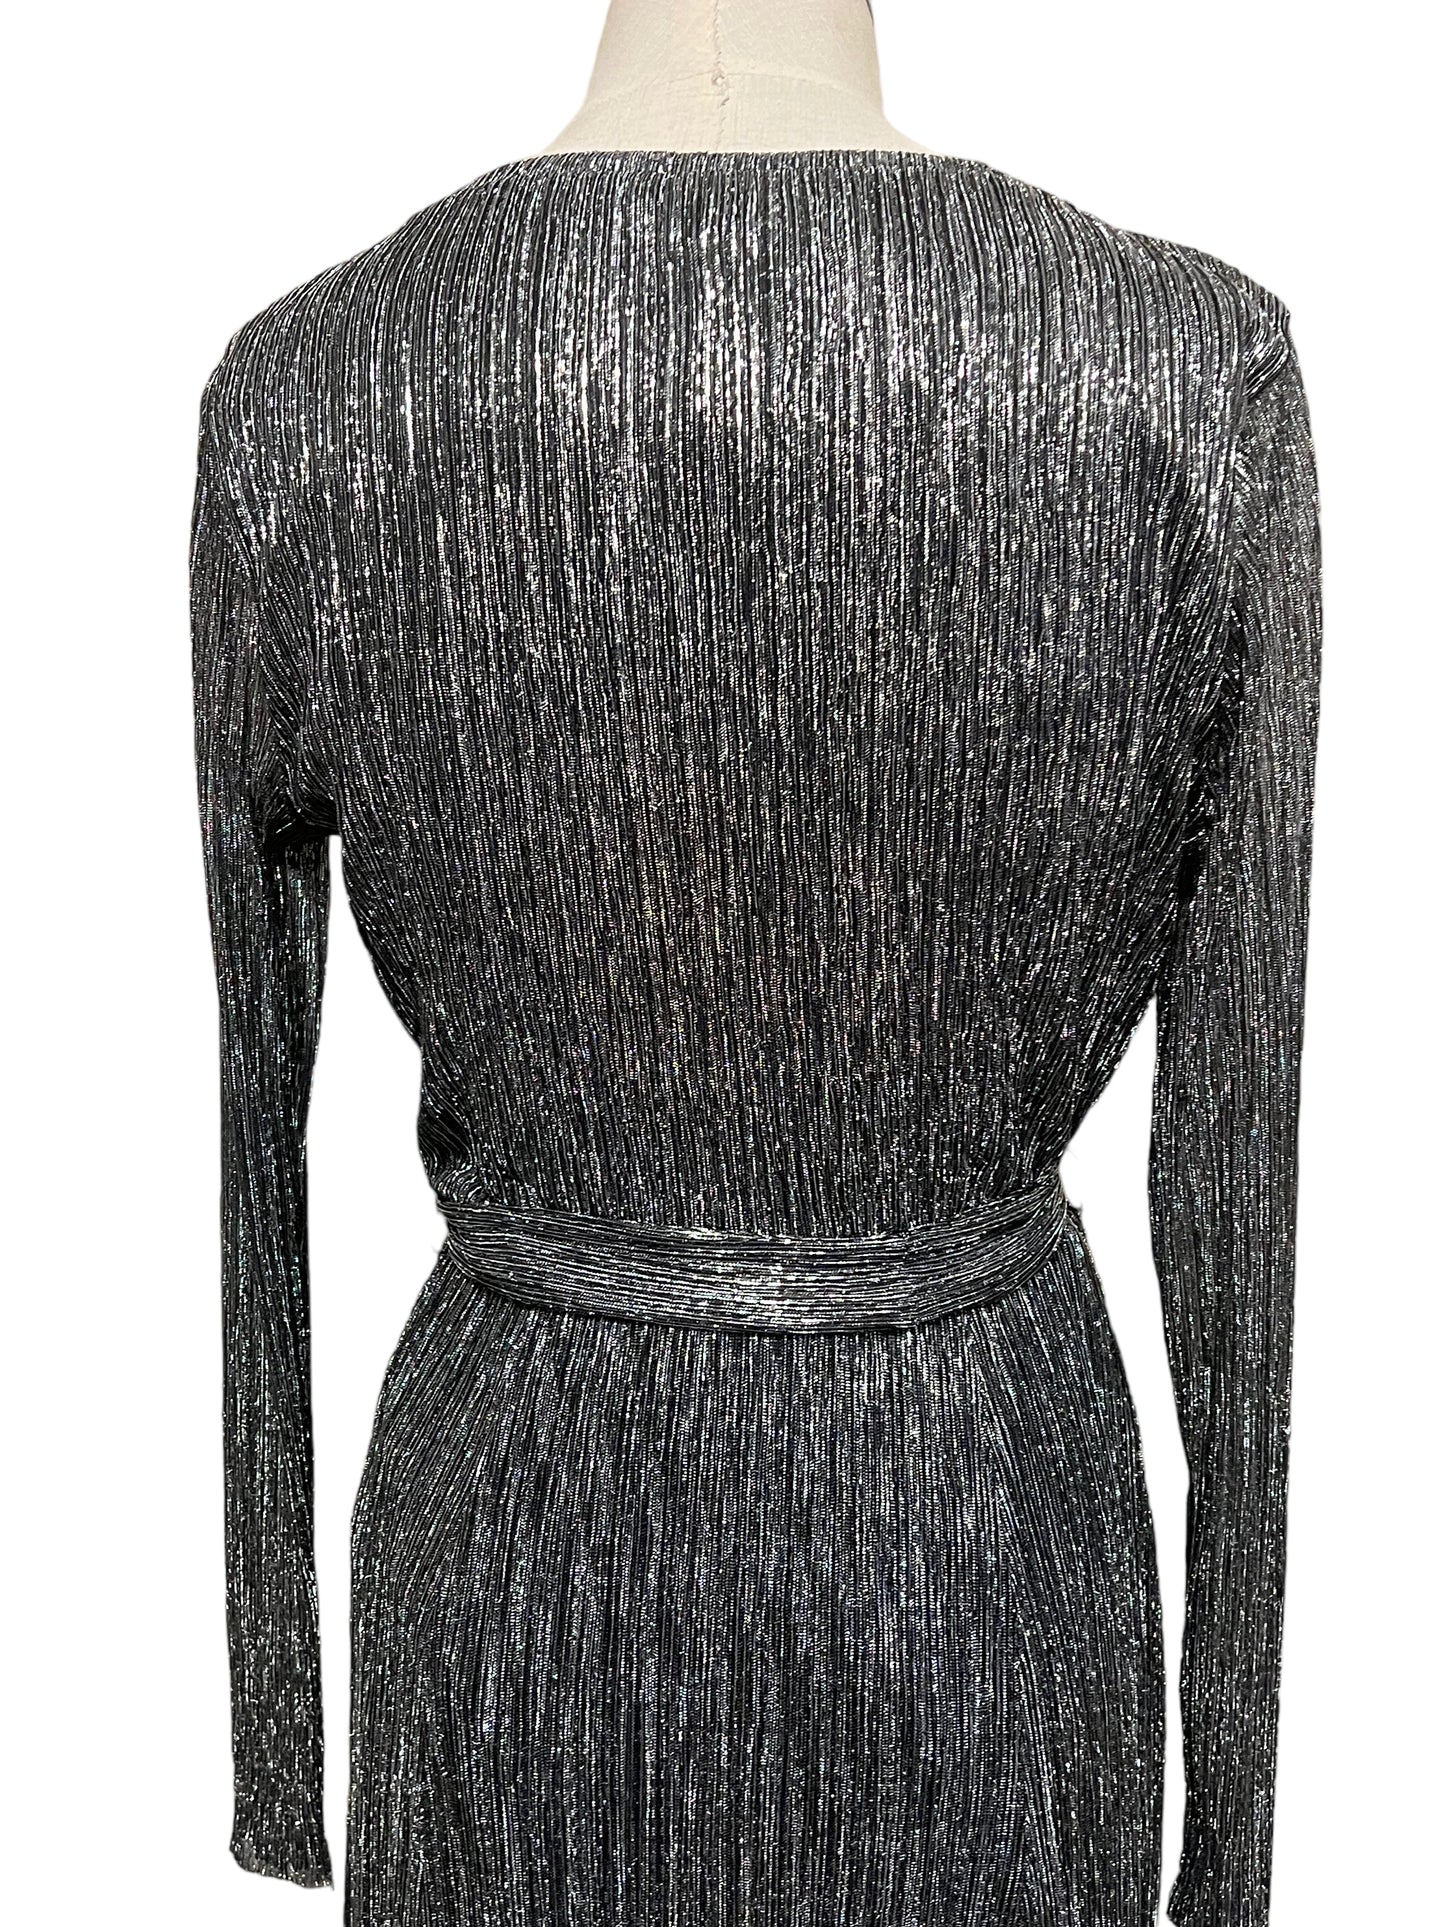 Anne Klein Size 6 Silver Metallic Gown